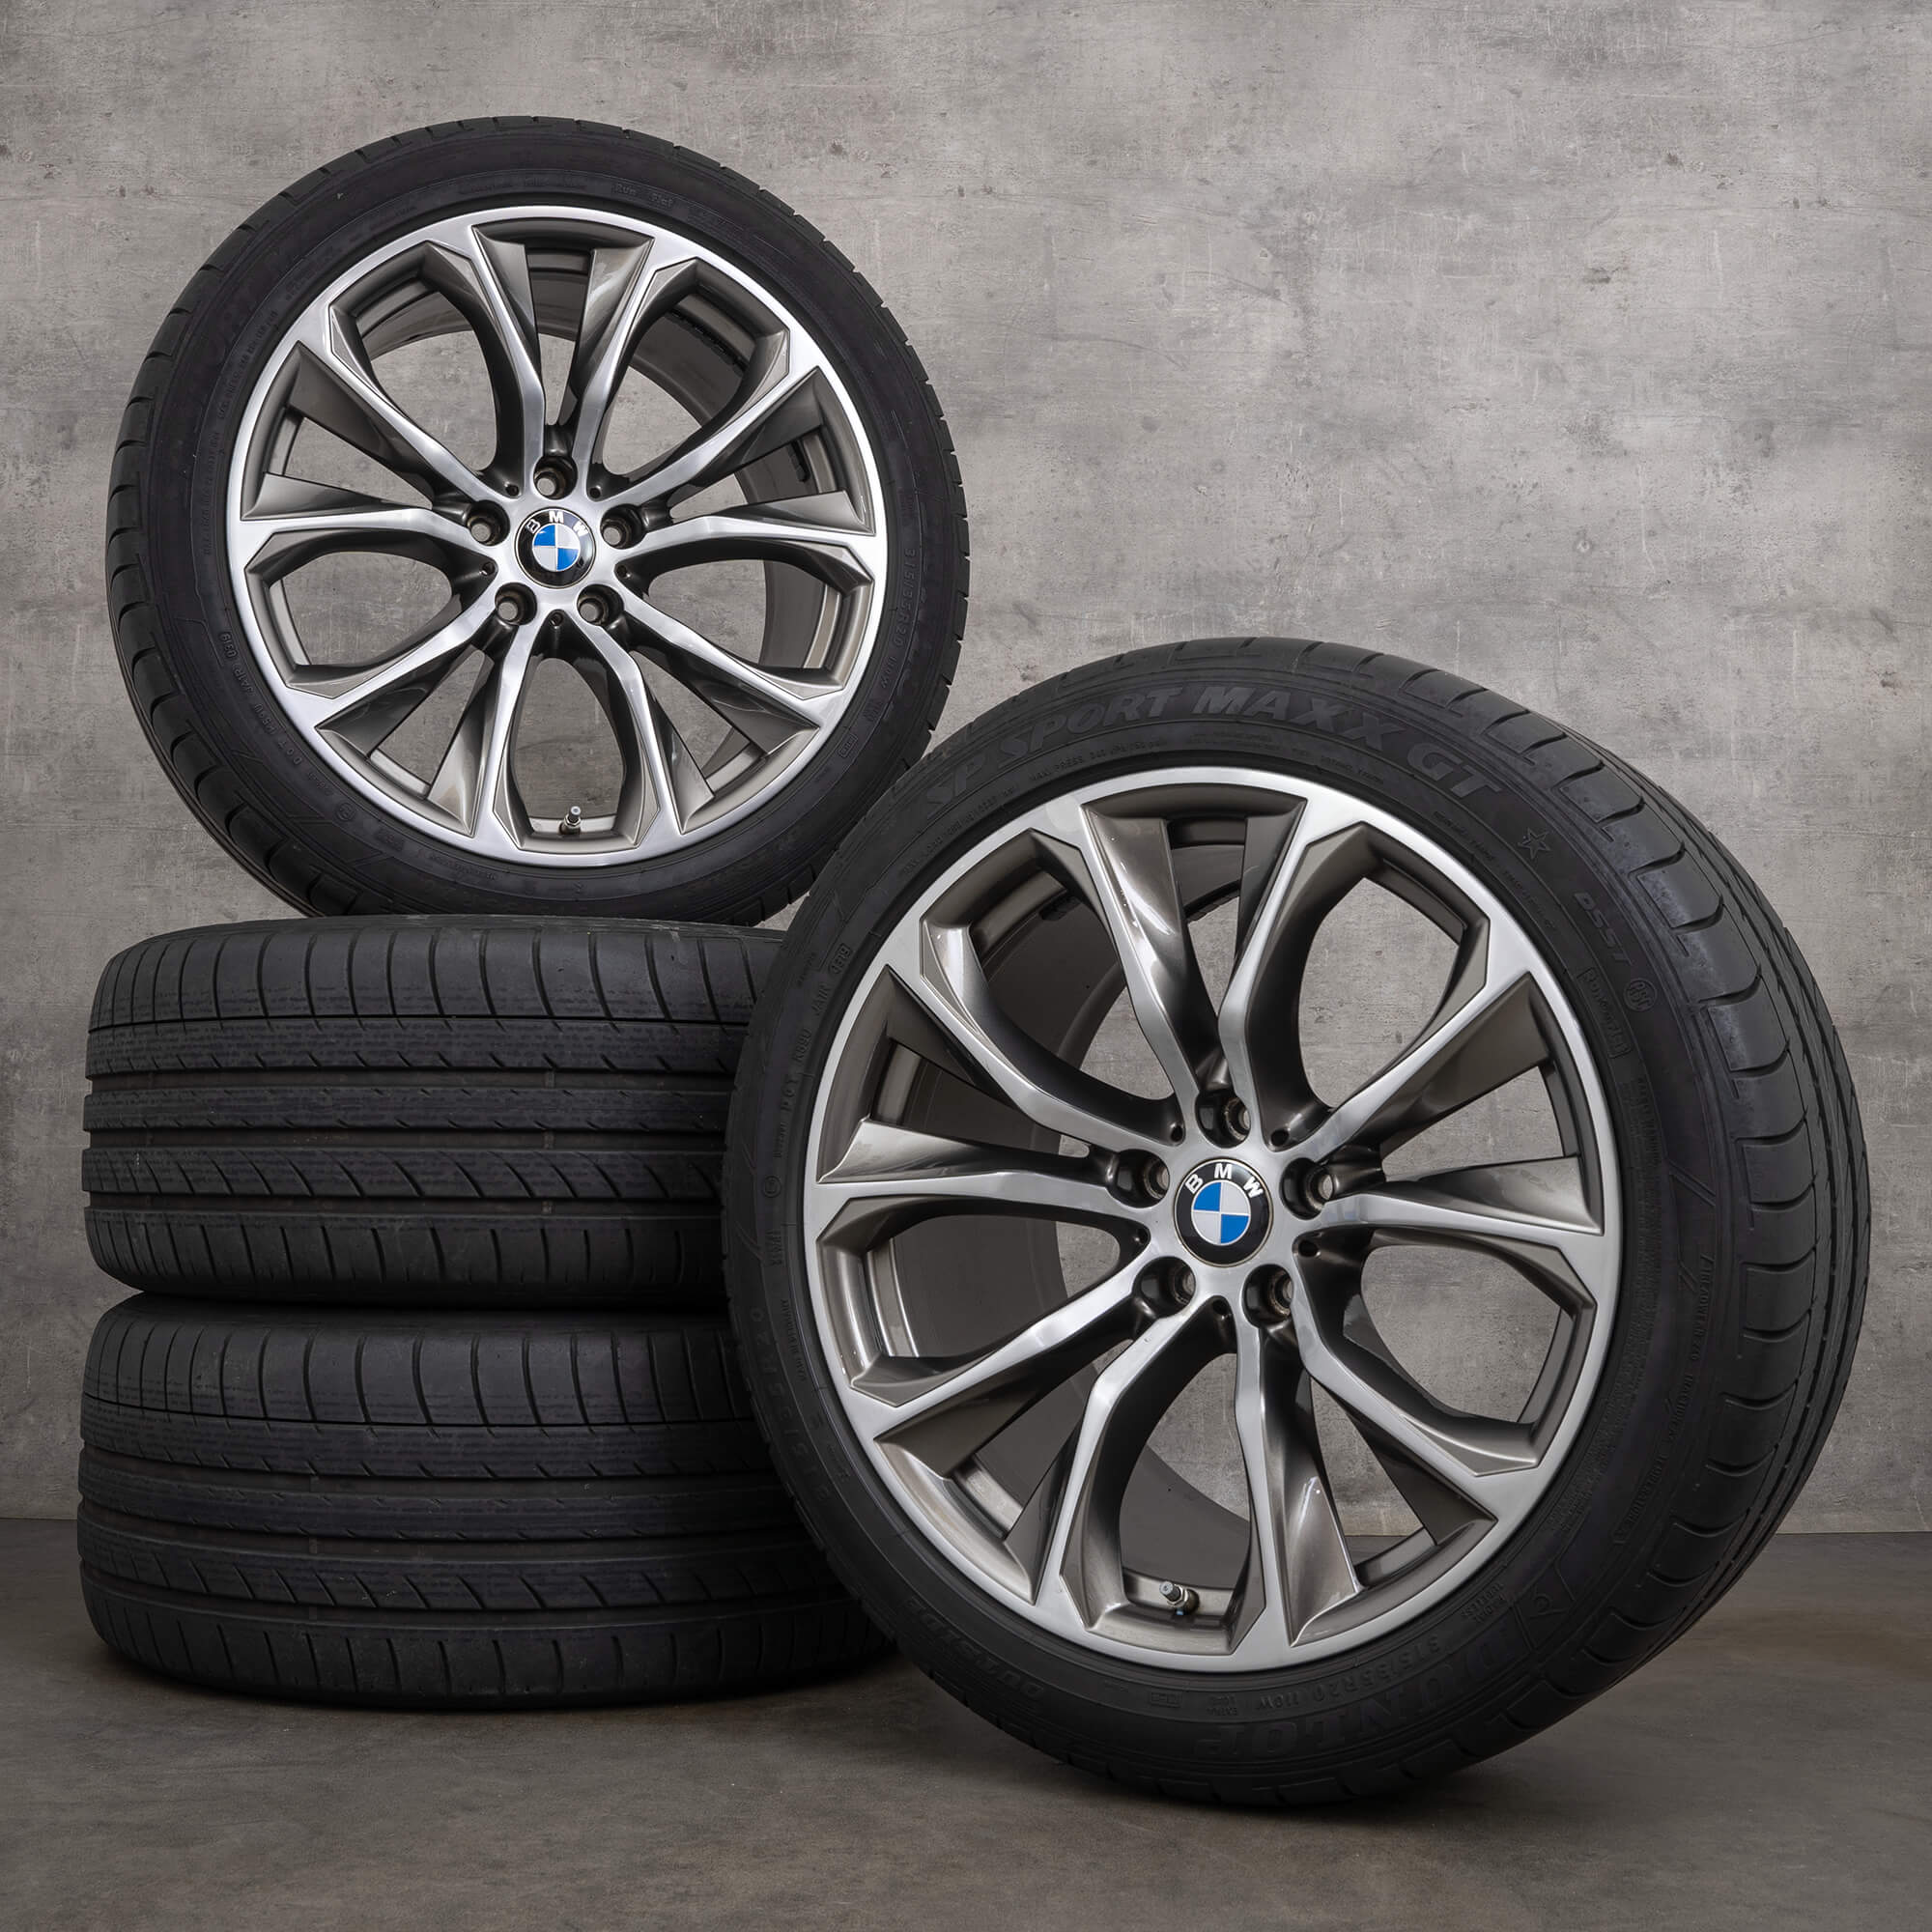 Jantes de alumínio BMW 20 polegadas X5 F15 E70 X6 F16 rodas verão pneus jantes